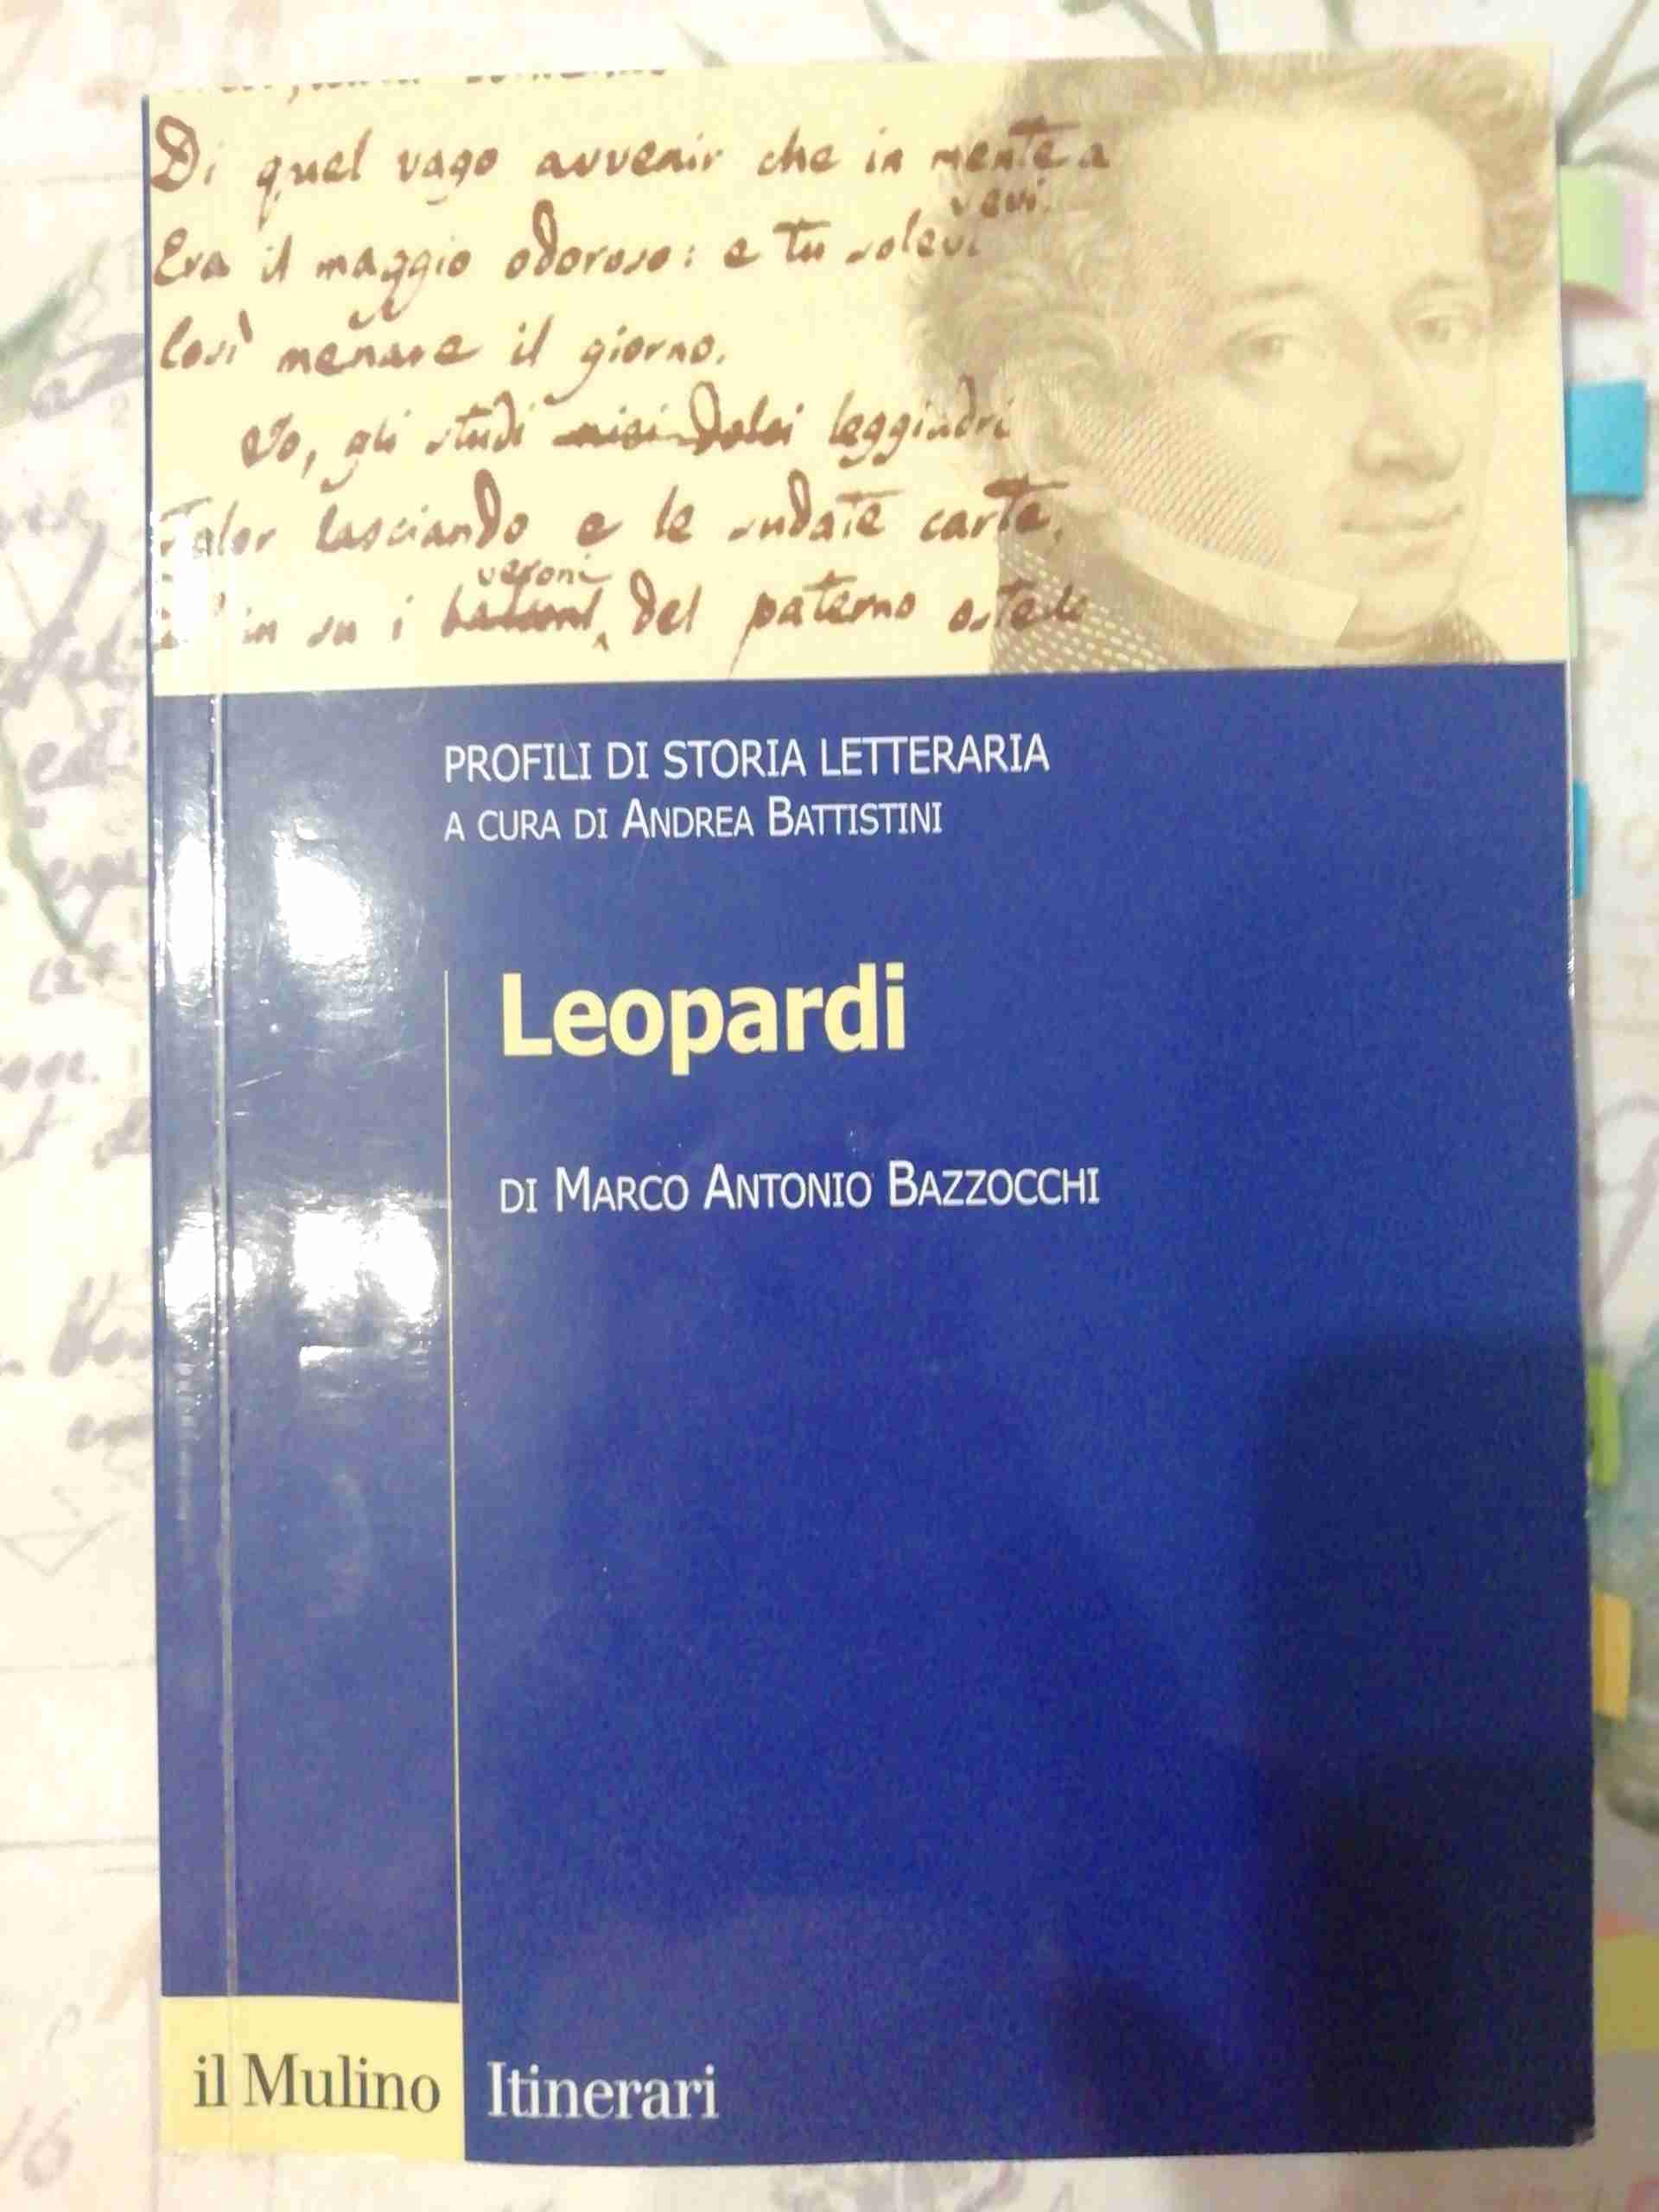 Profili di storia letteraria (a cura di Andrea Battistini) - LEOPARDI